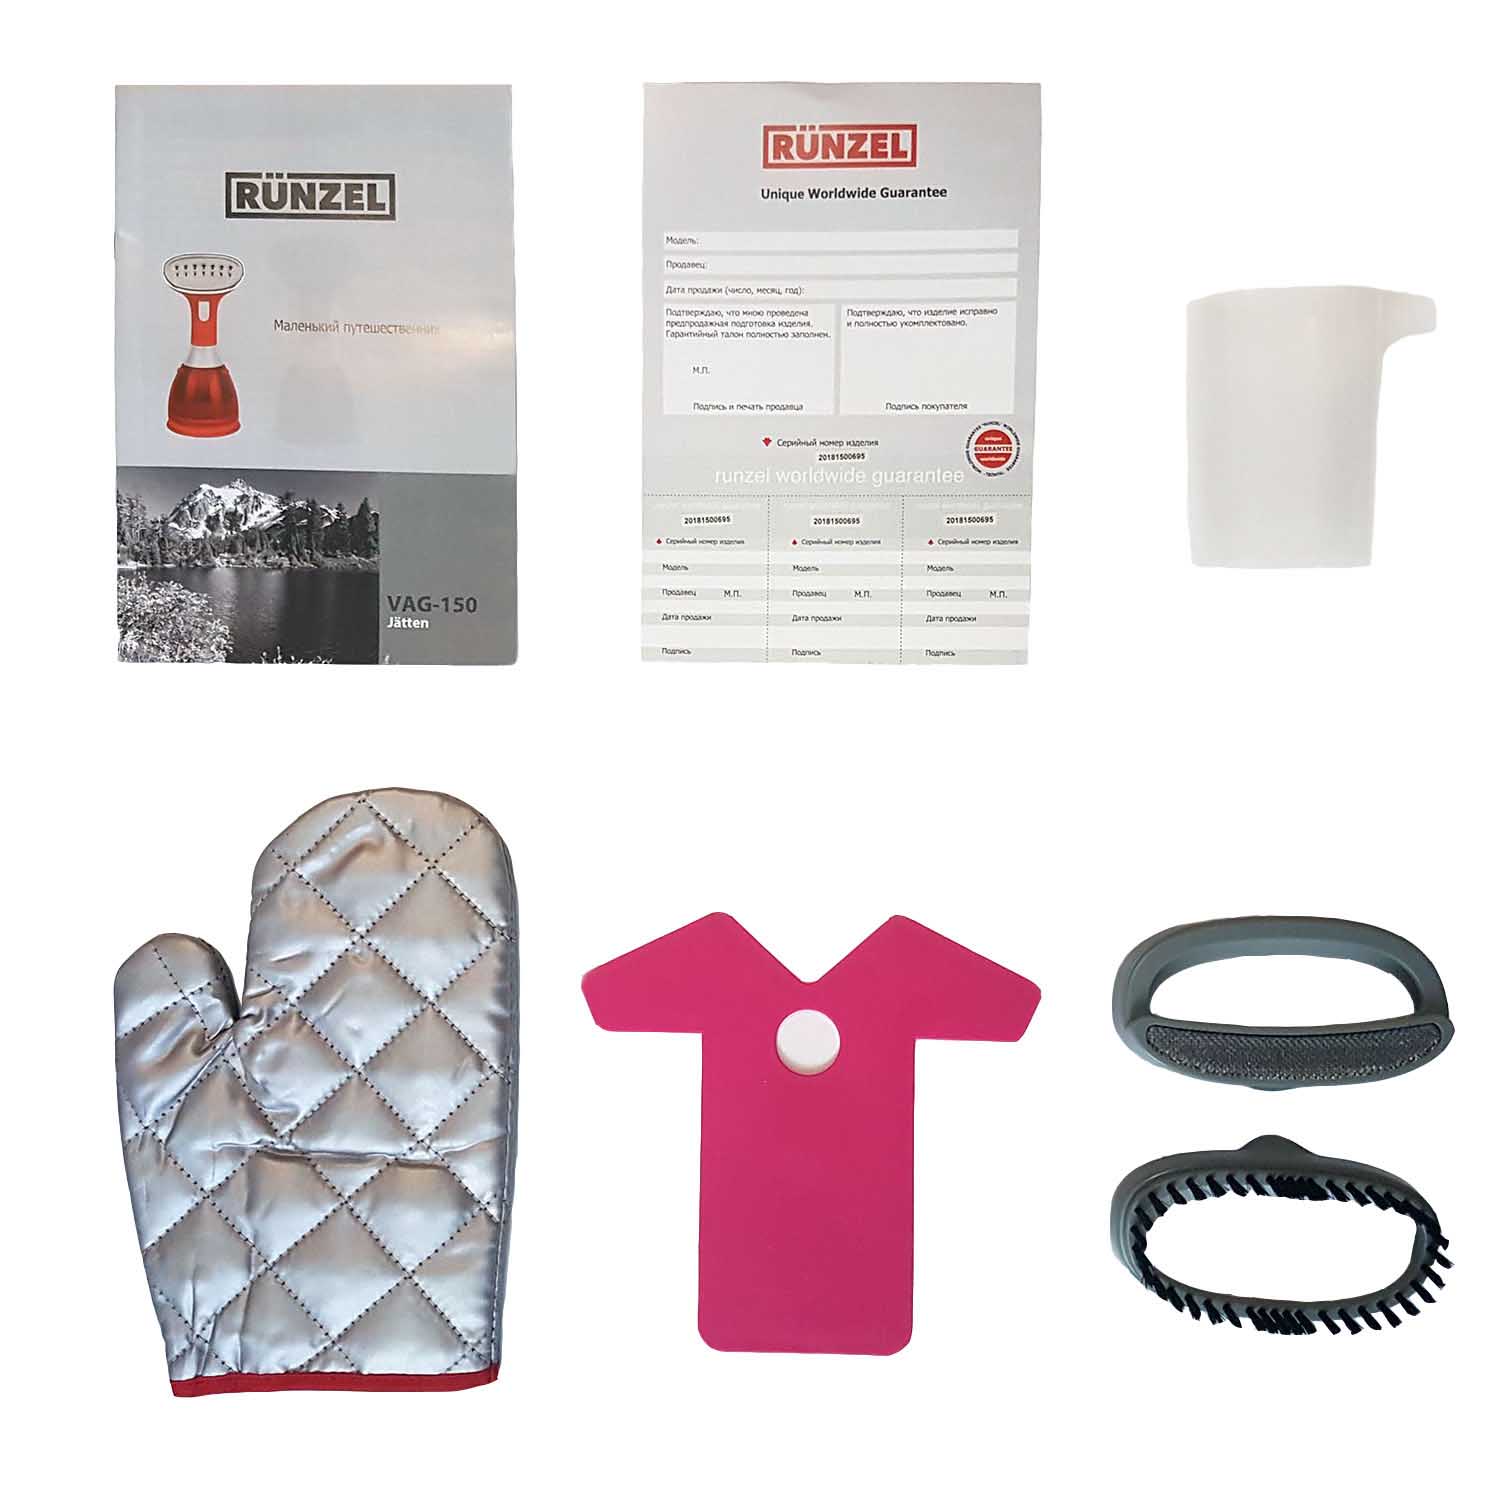 Ручной отпариватель для одежды RUNZEL VAG-150 JATTEN - аксессуары